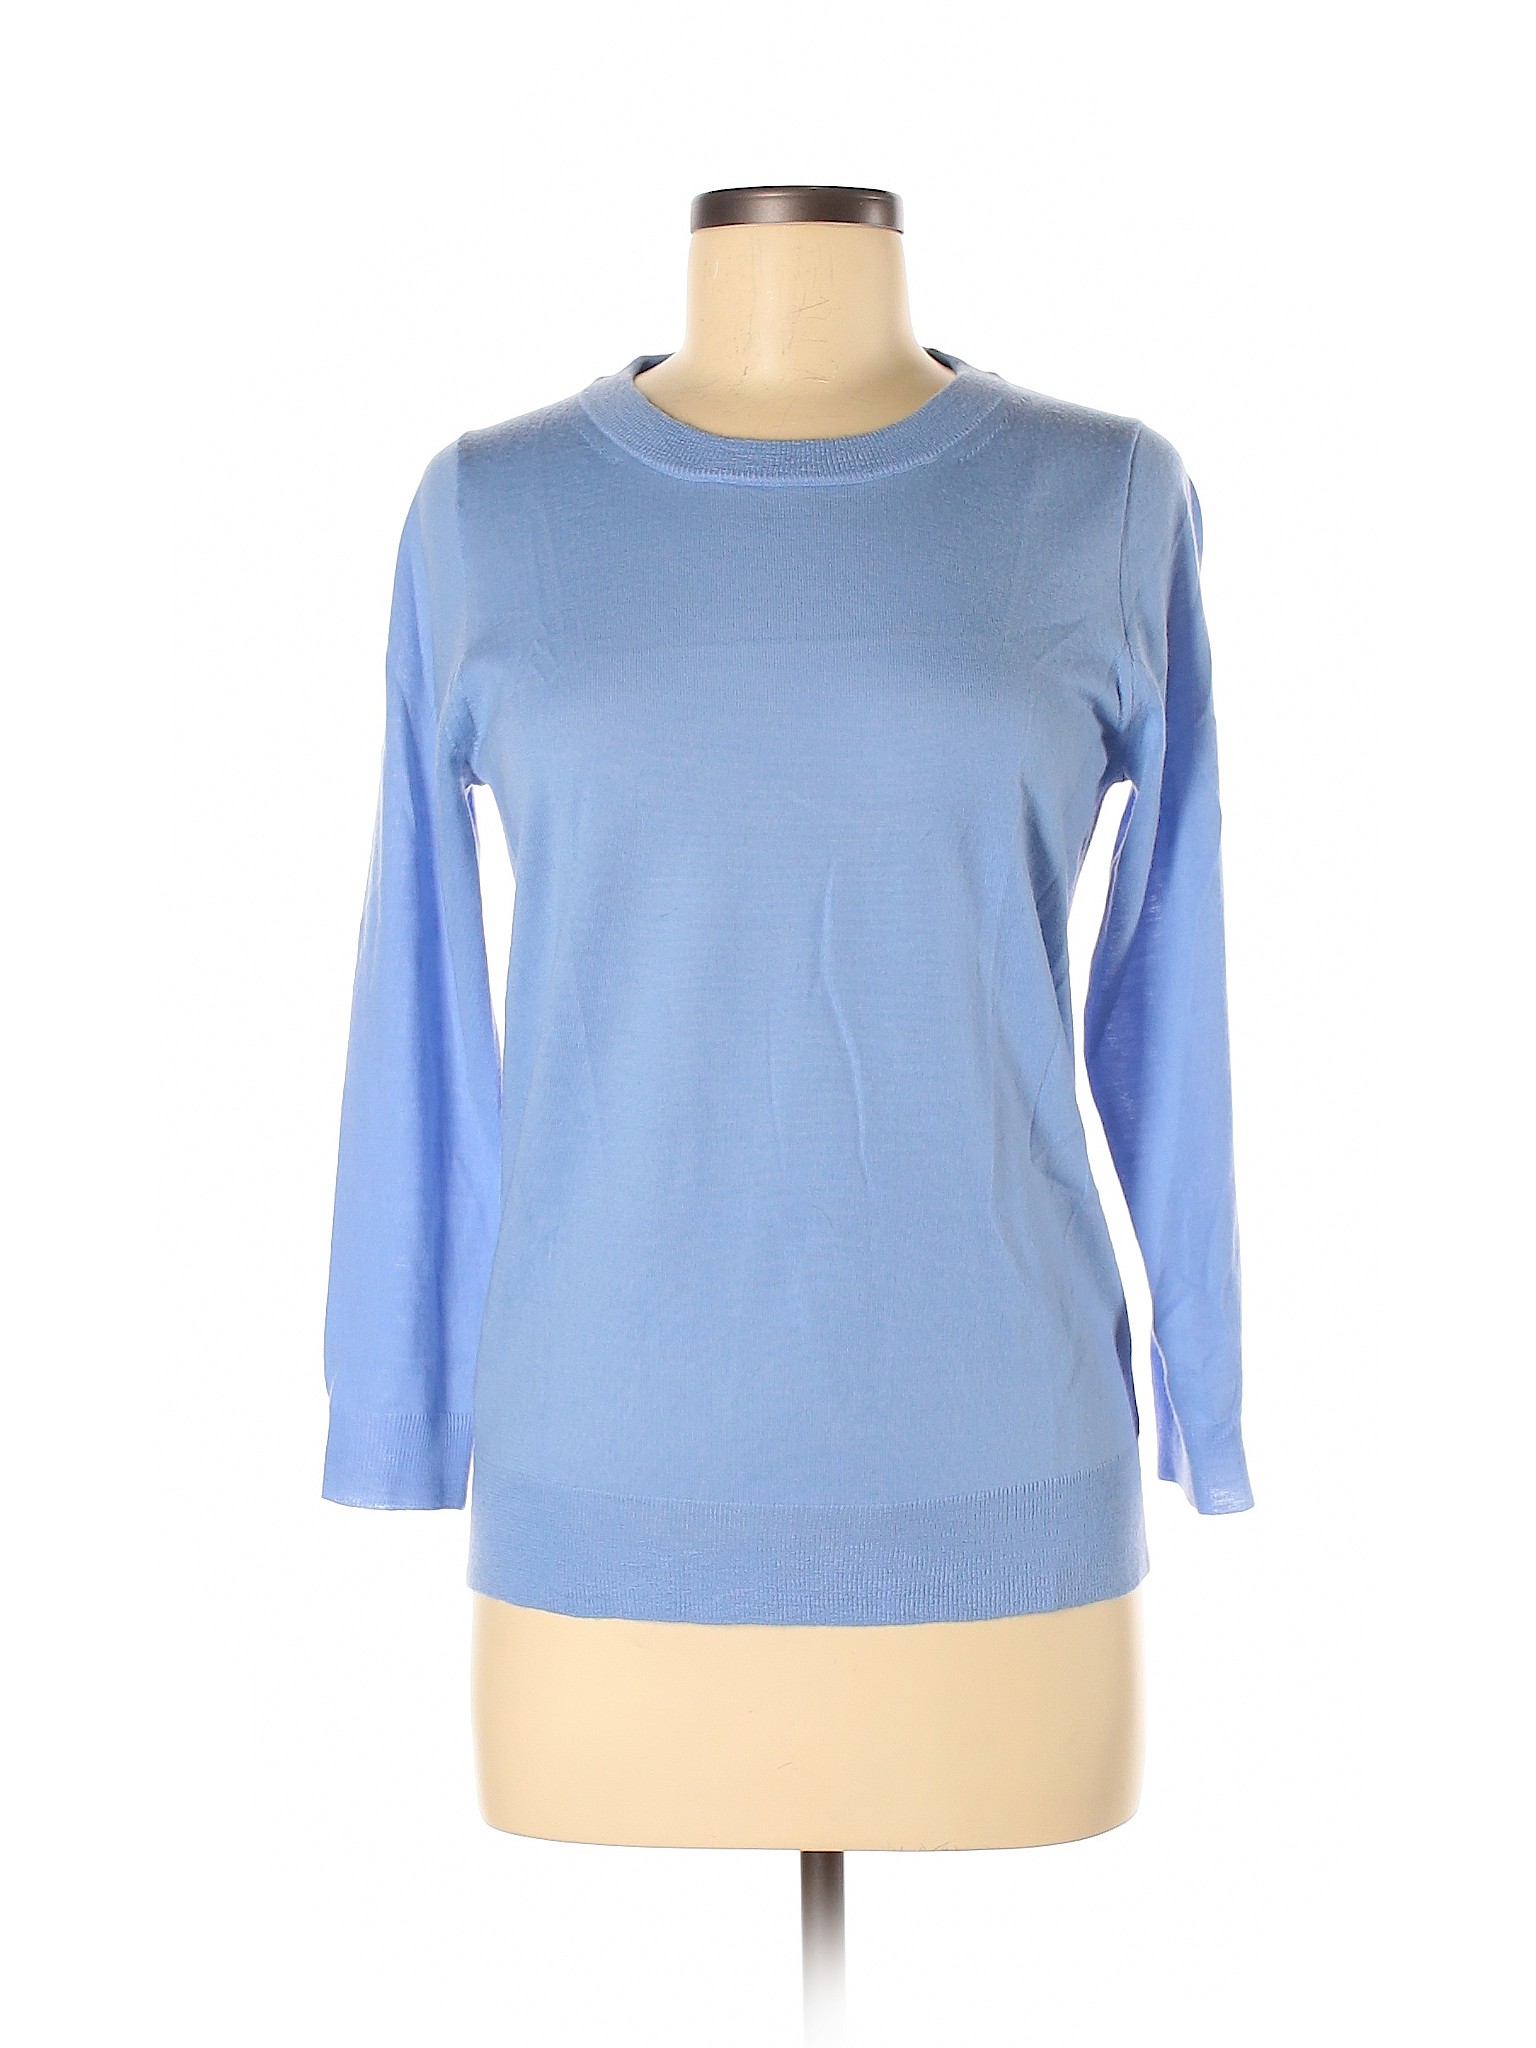 J.Crew Women Blue Wool Pullover Sweater M | eBay